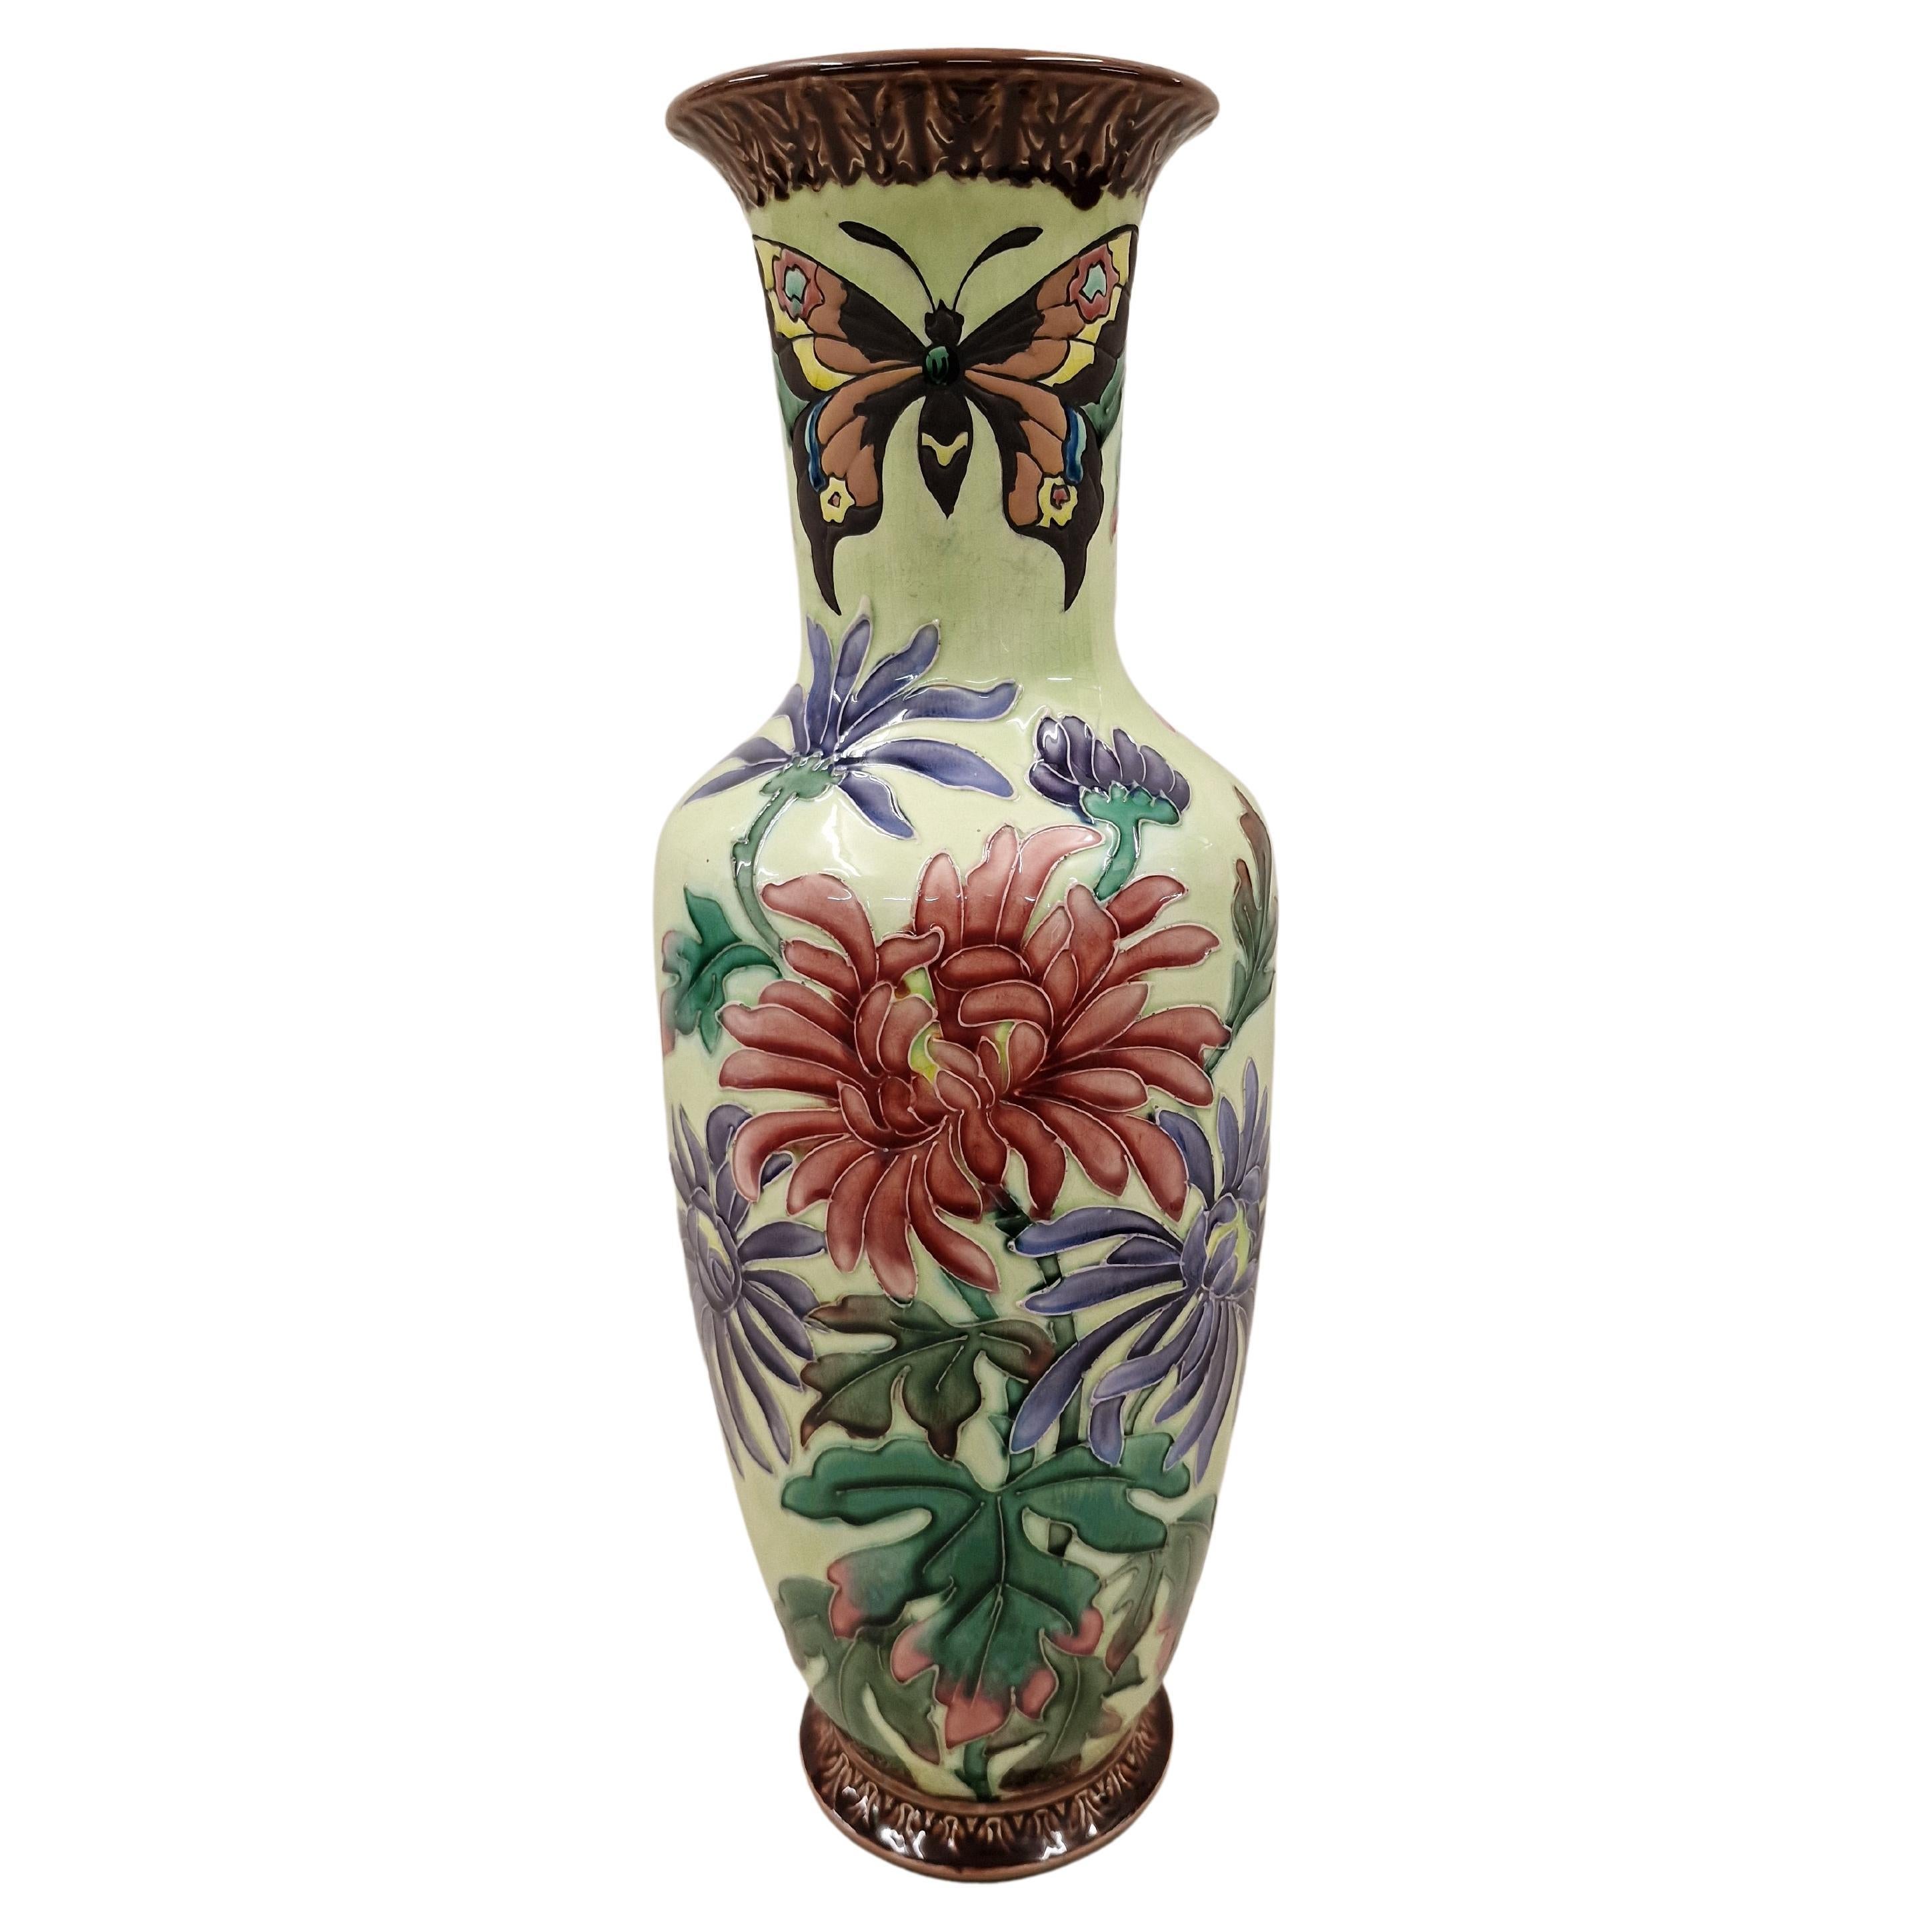 Huge Flower Vase, Butterfly Decor, Ceramic, 1910, Jugendstil/Art Nouveau, France